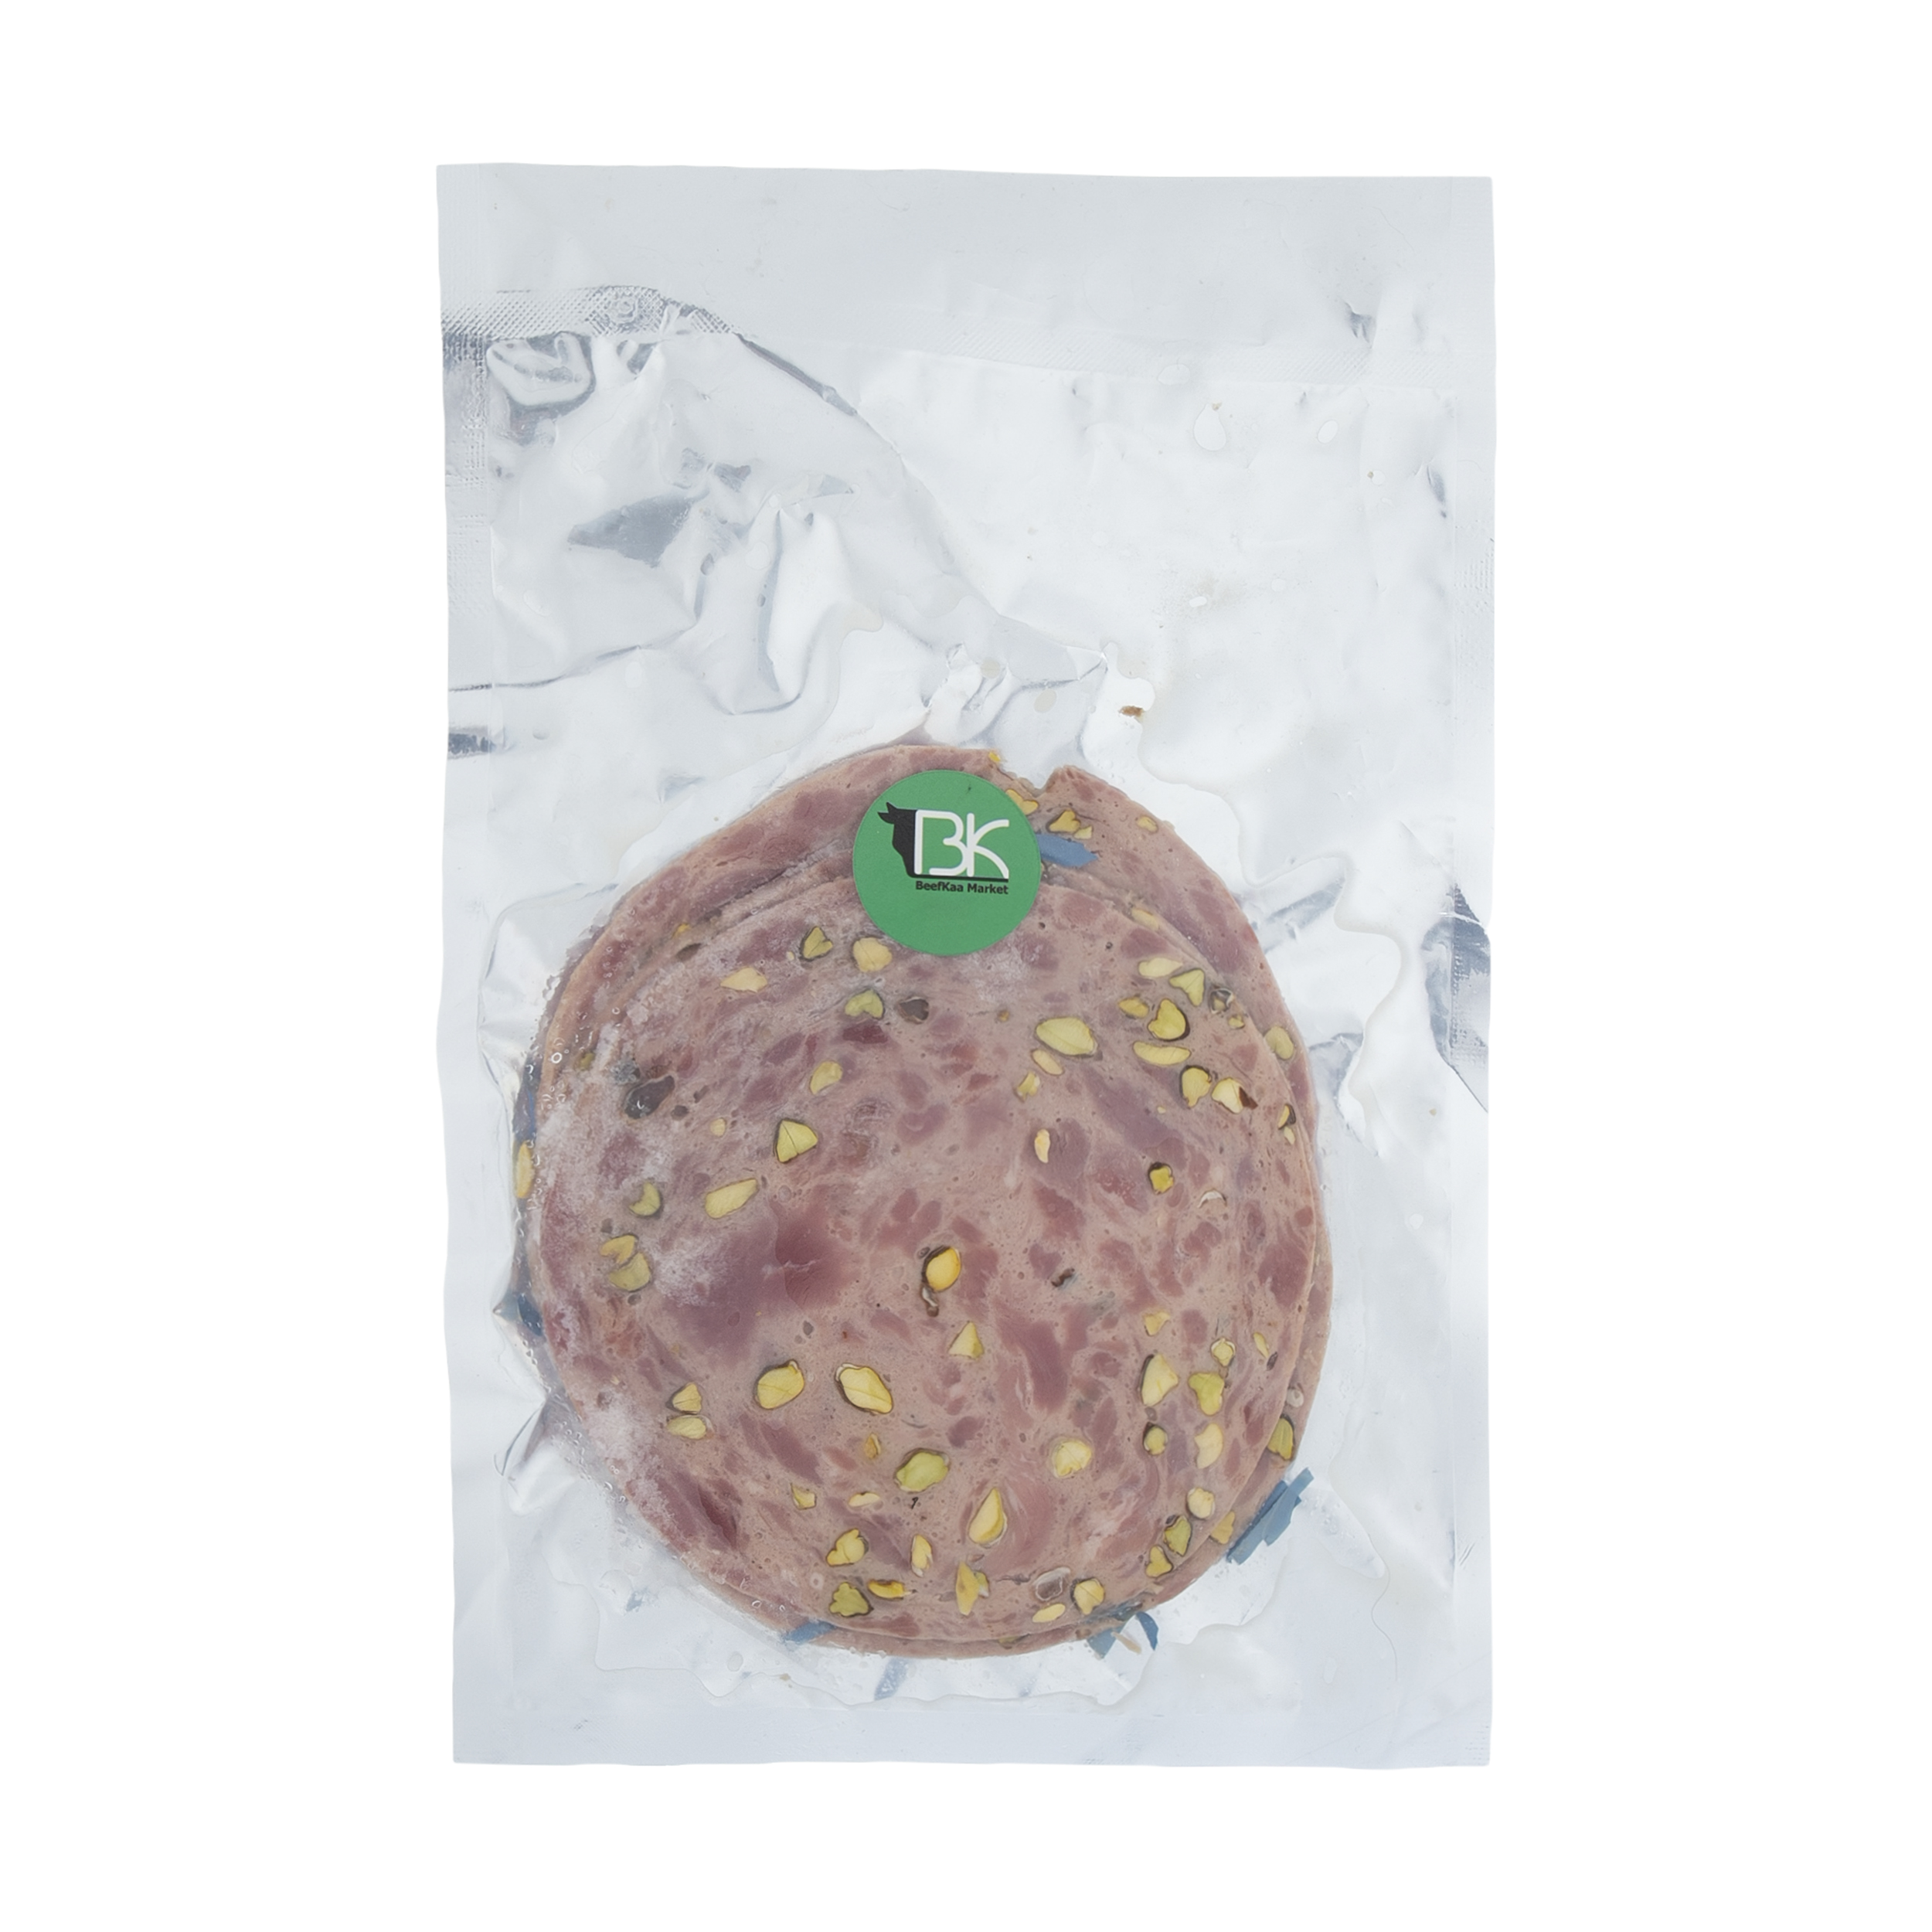 ژامبون گوشت ویژه با پسته بیفکا - 215 گرم